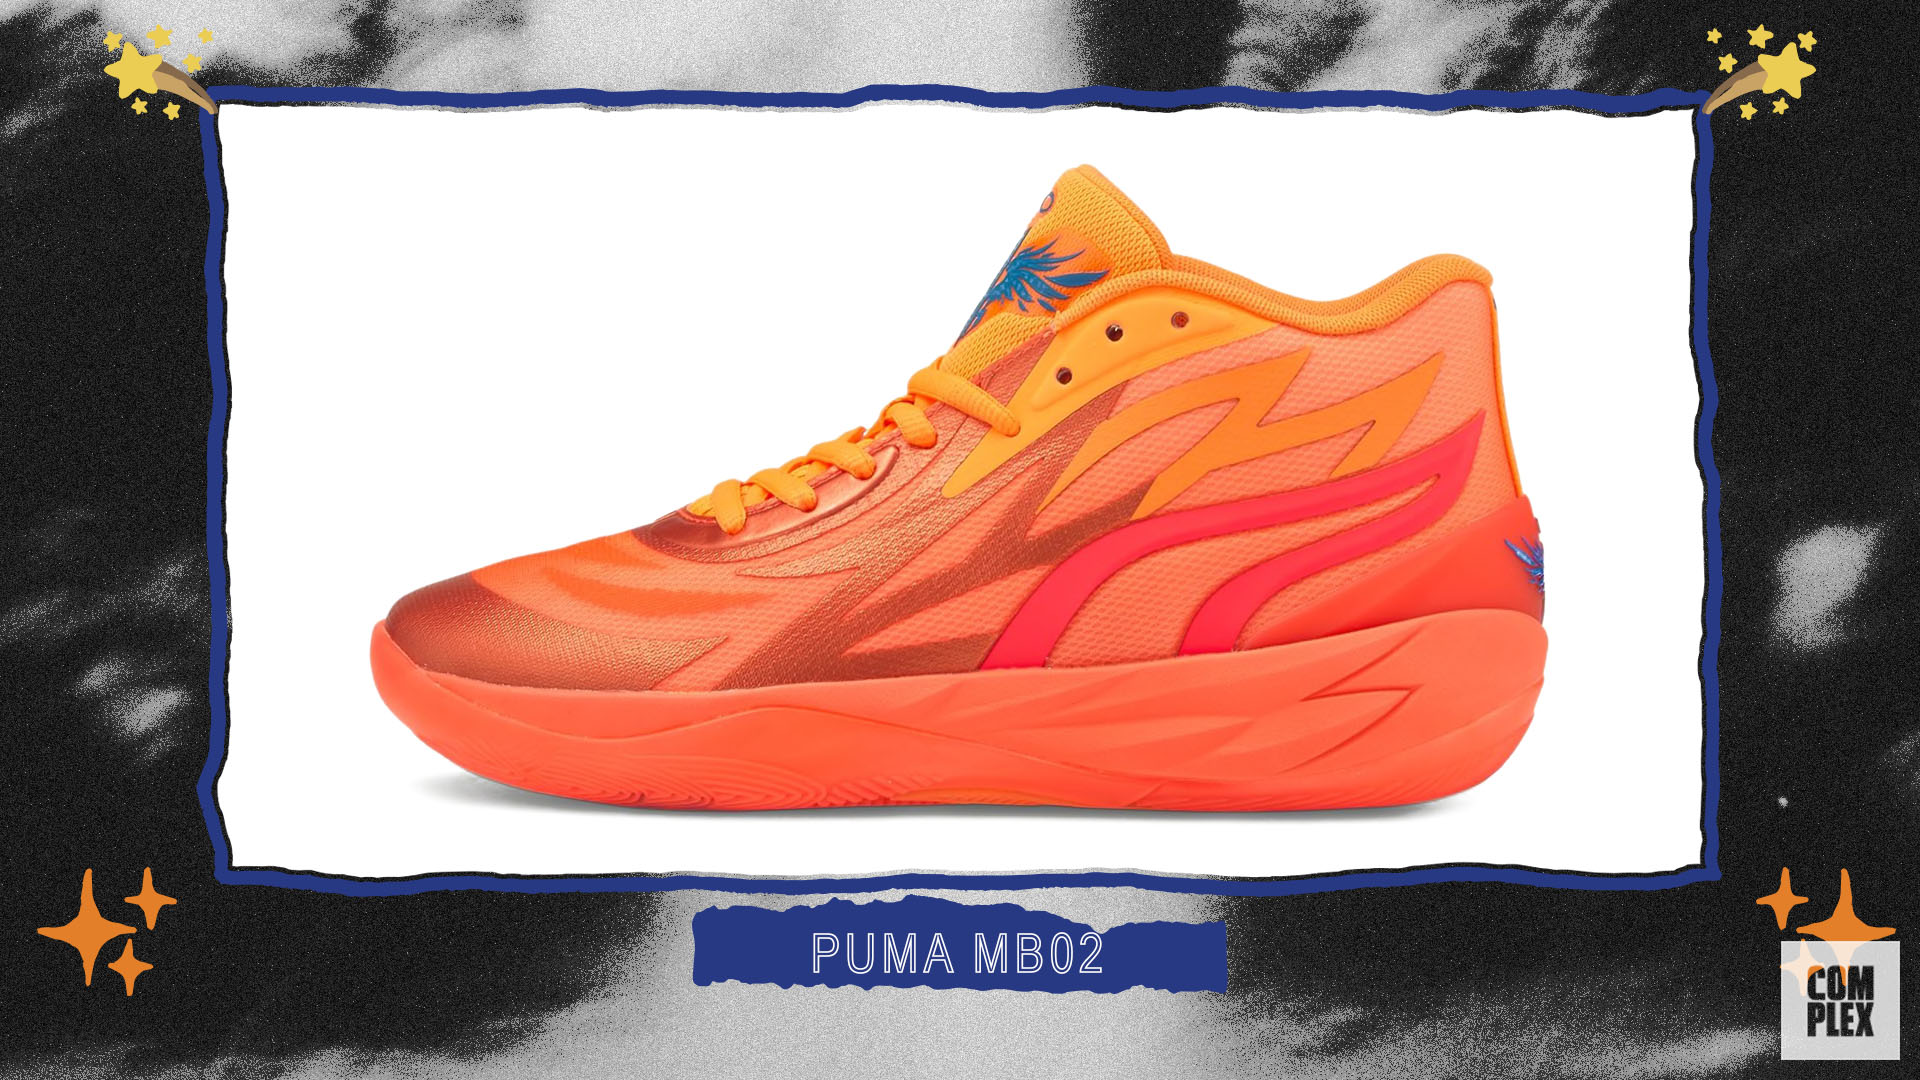 Best New Sneaker Designs 2022 Puma MB02